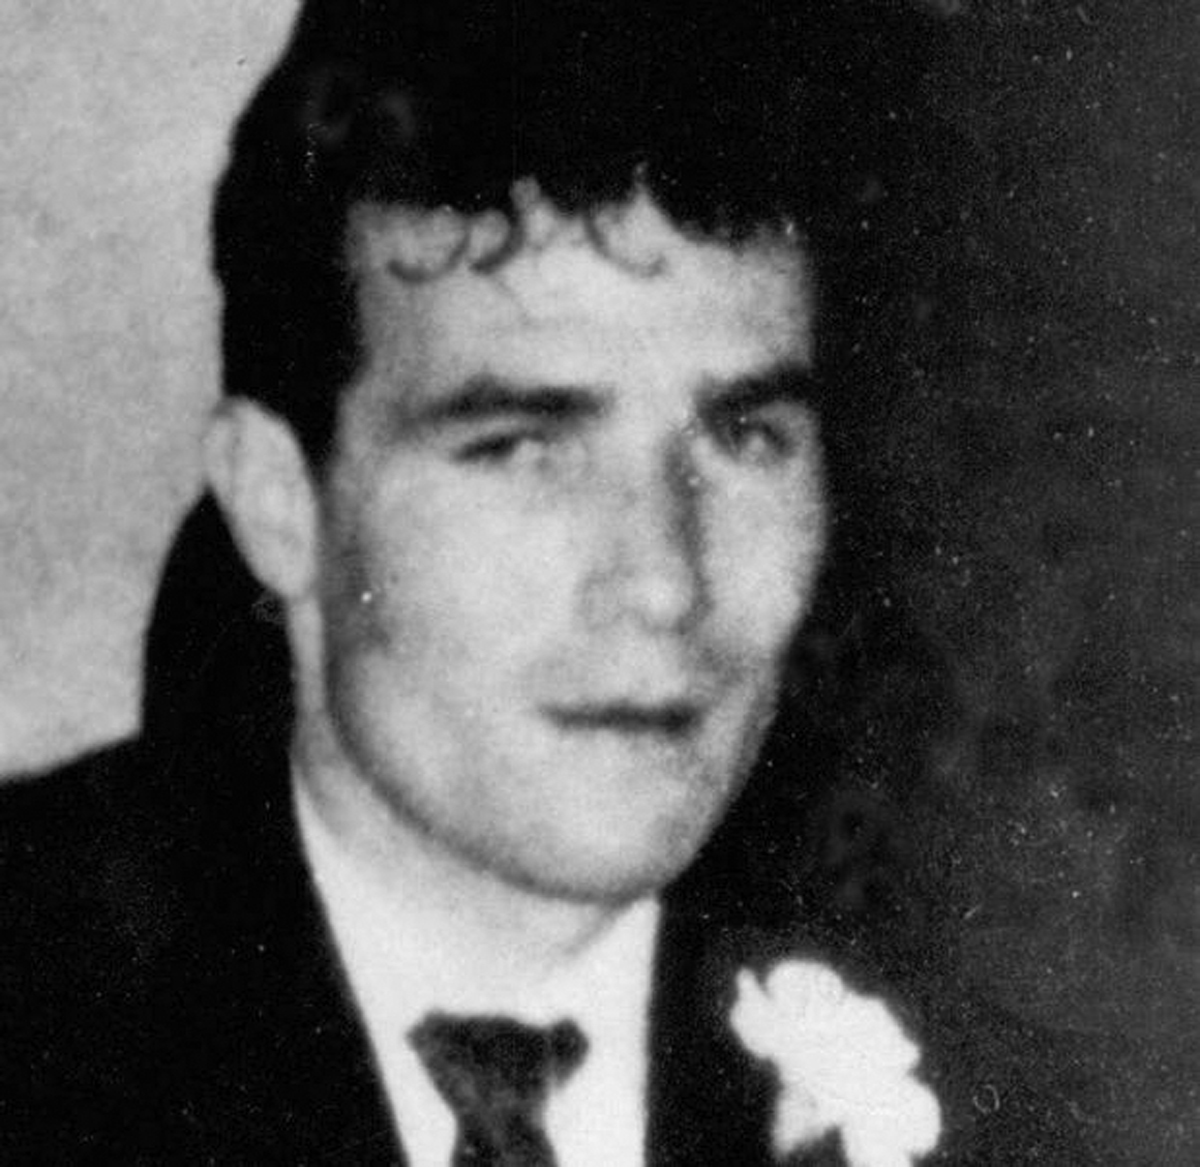 MURDERED: Bernard Watt was shot dead by the British Army in 1971